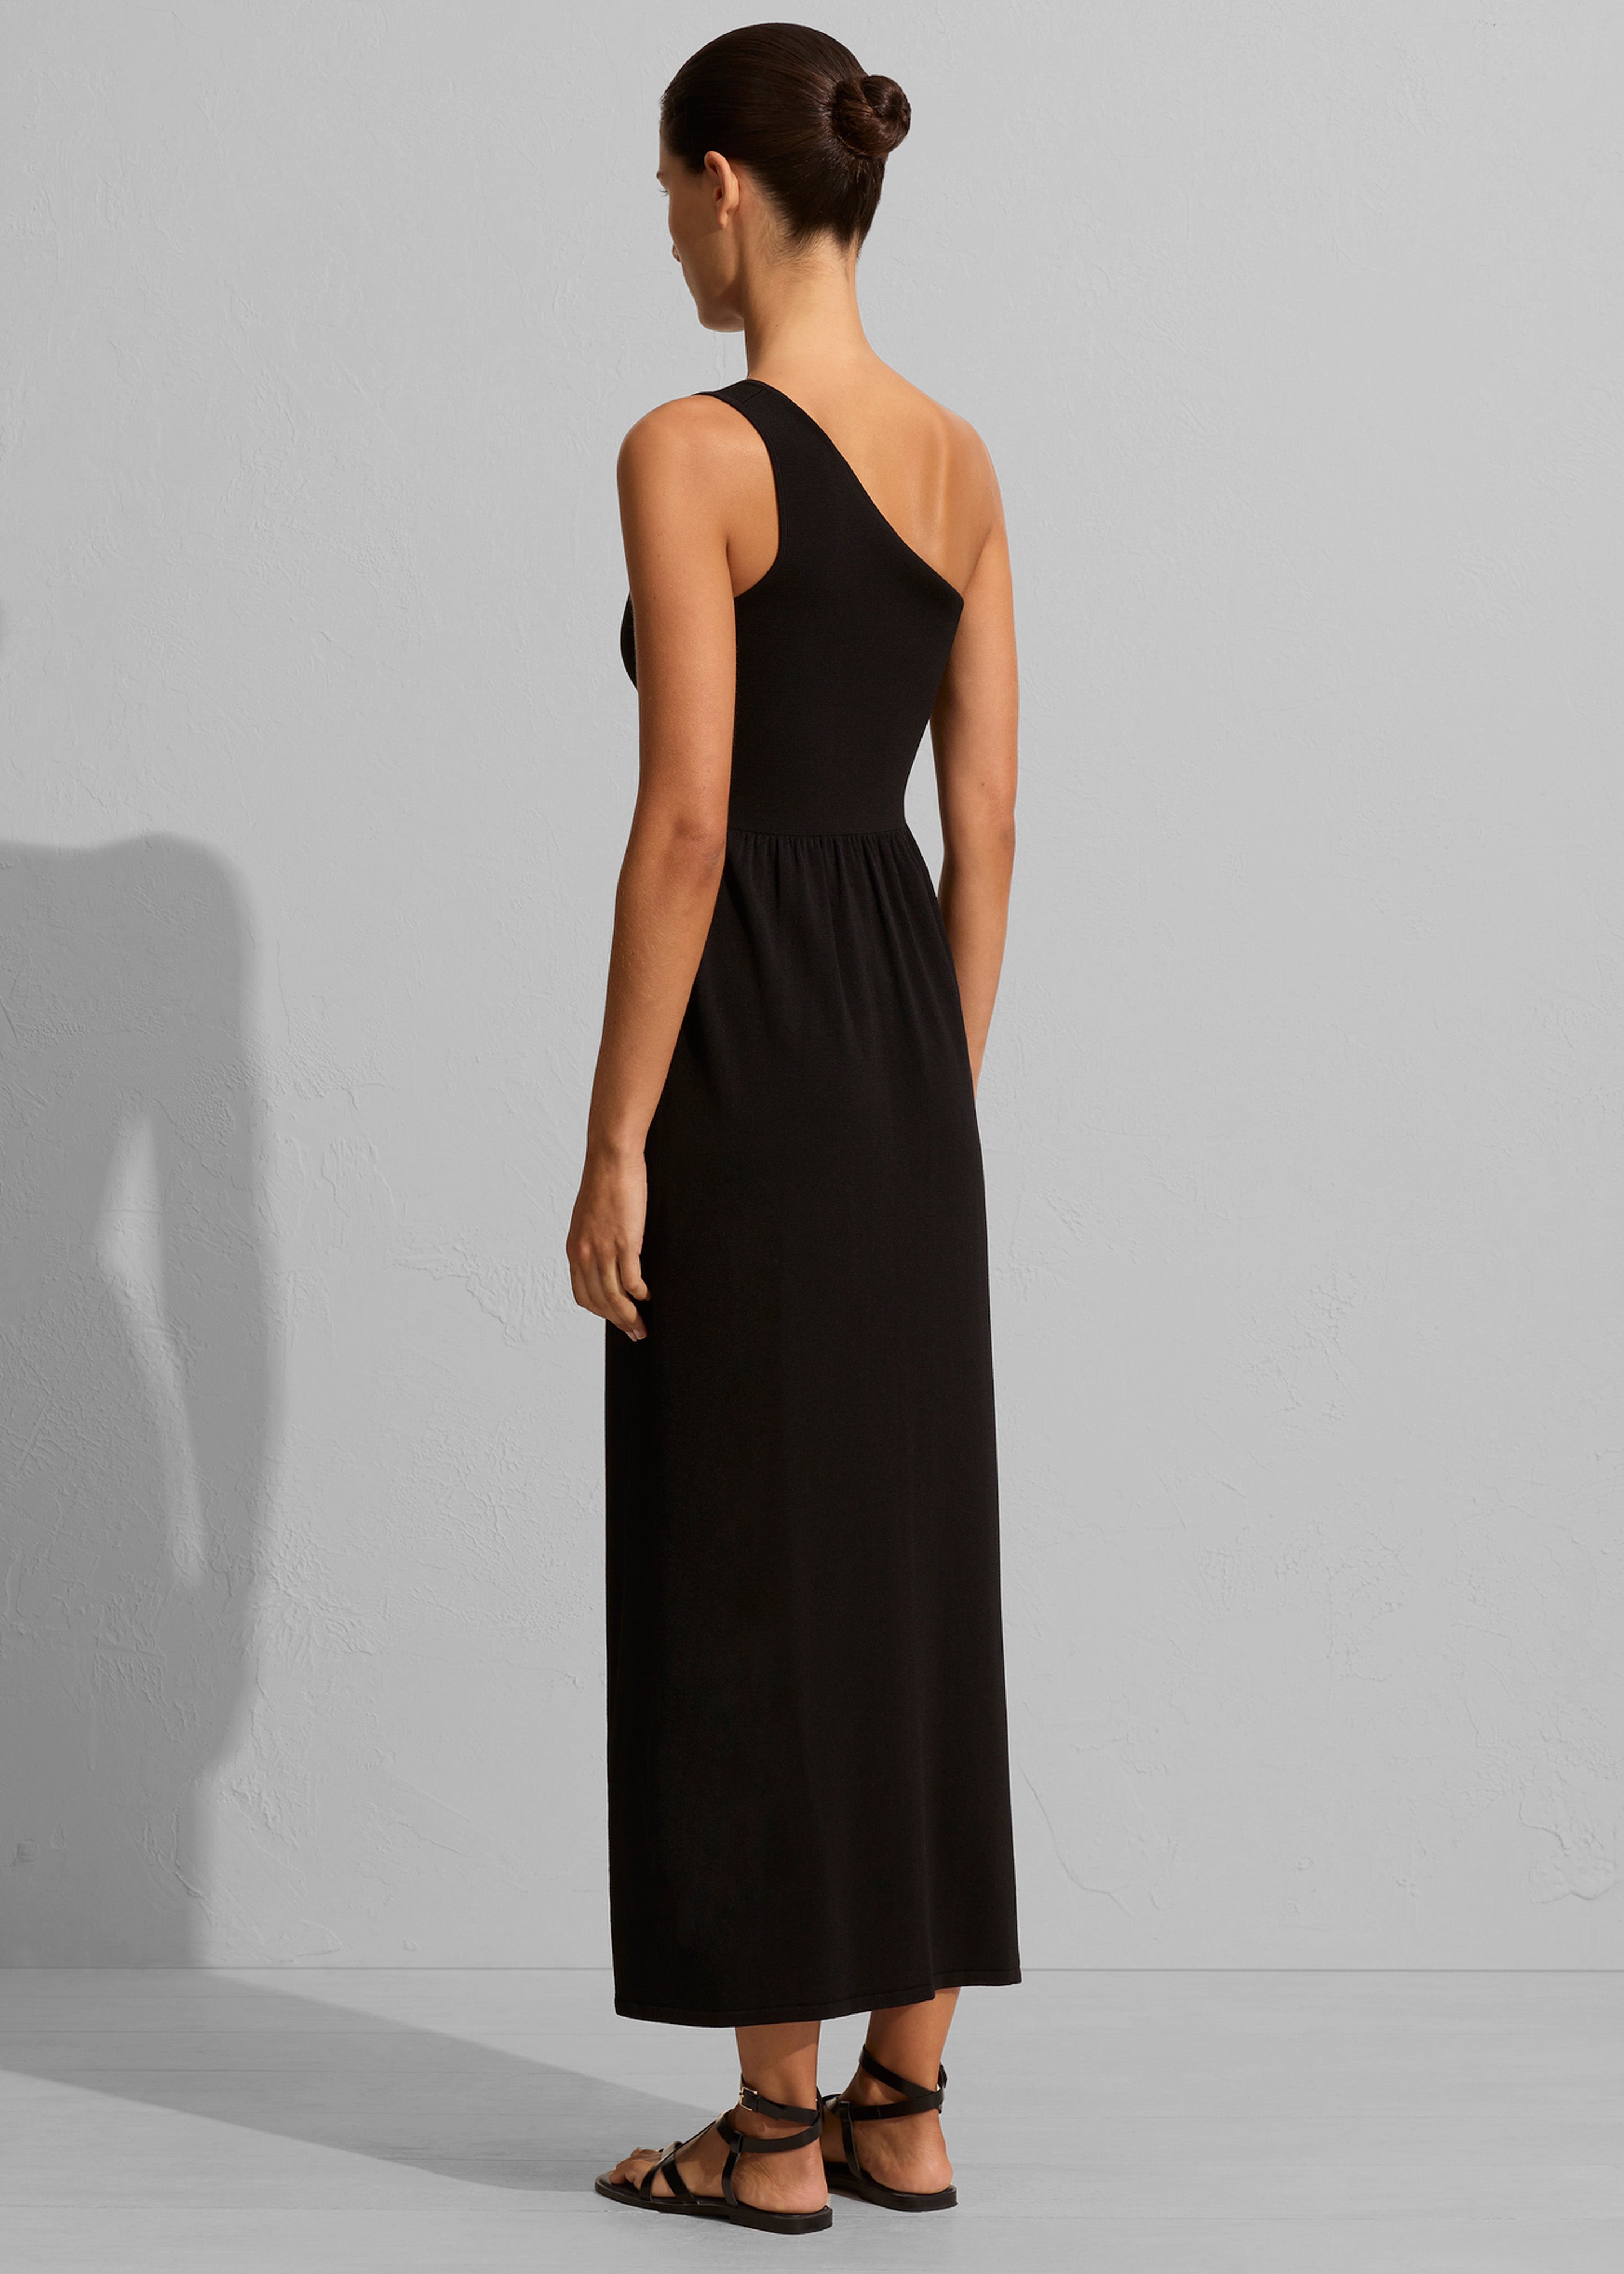 Matteau Asymmetric Knit Dress - Black - 4